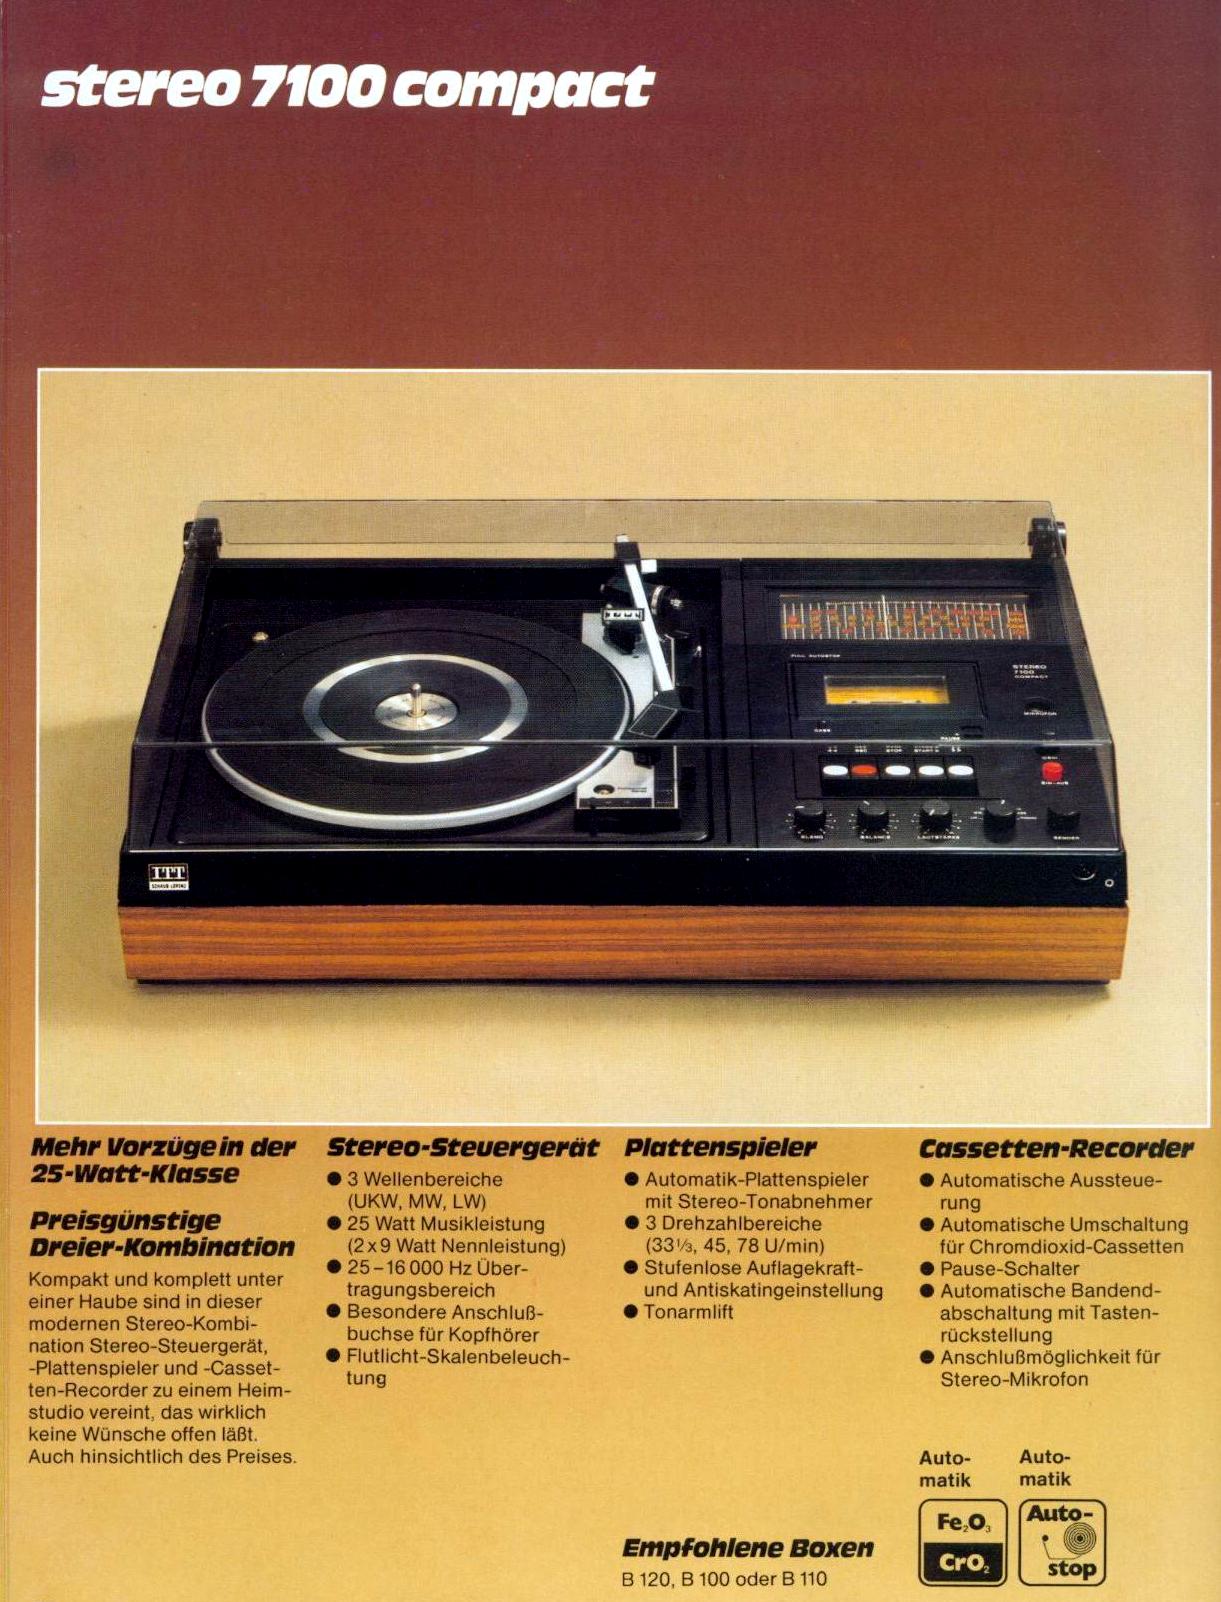 ITT 7100 Compact-Prospekt-1976.jpg